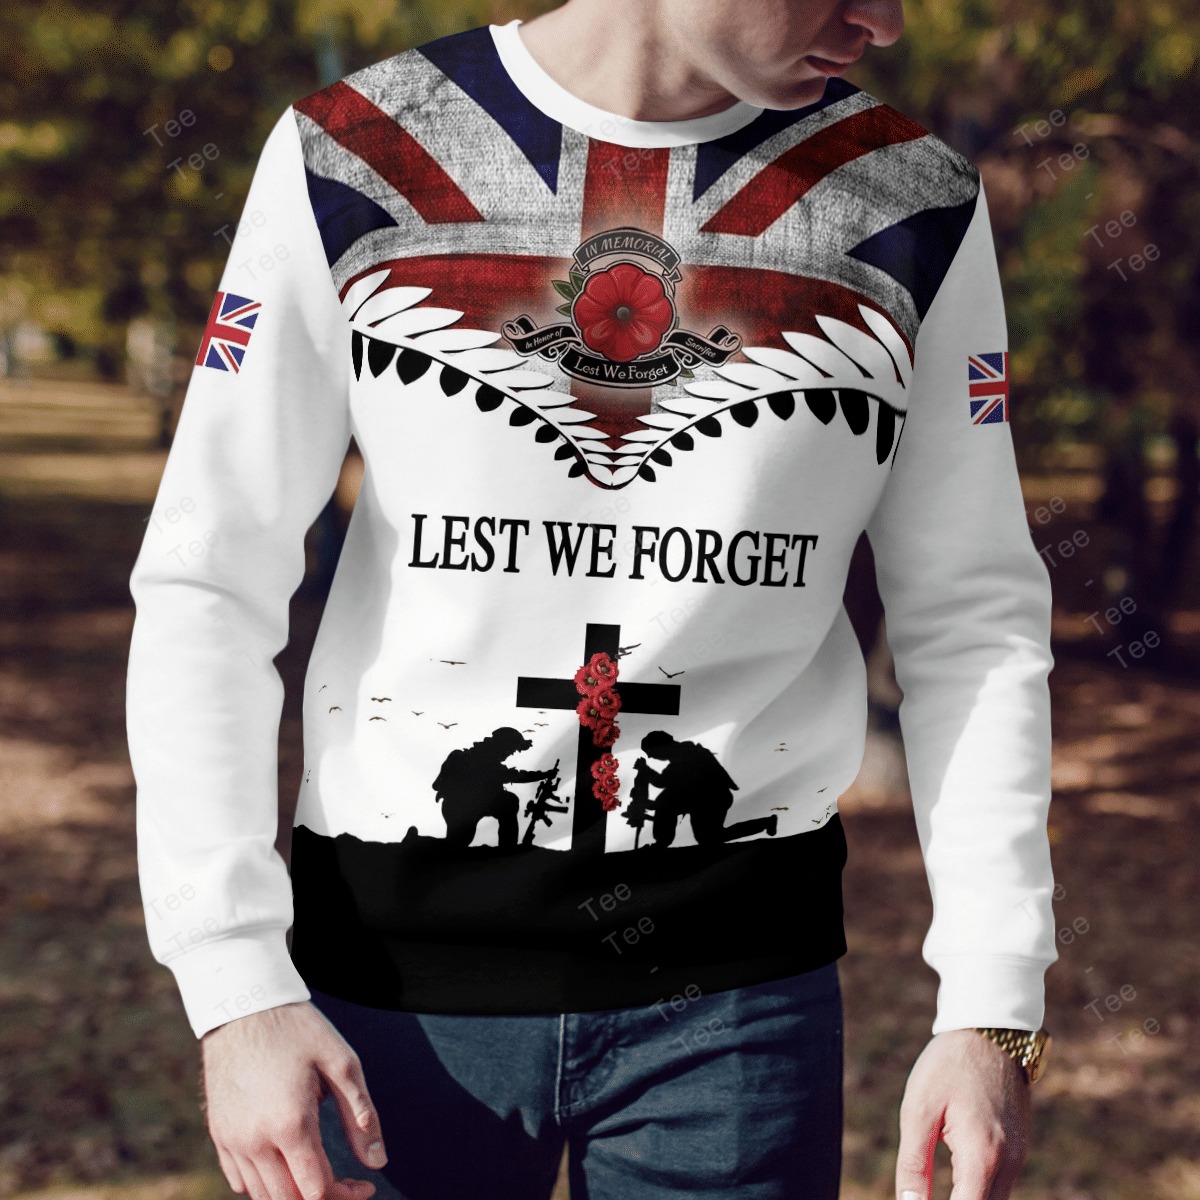 Lest we forget Veteran American flag 3d shirt, hoodie 11